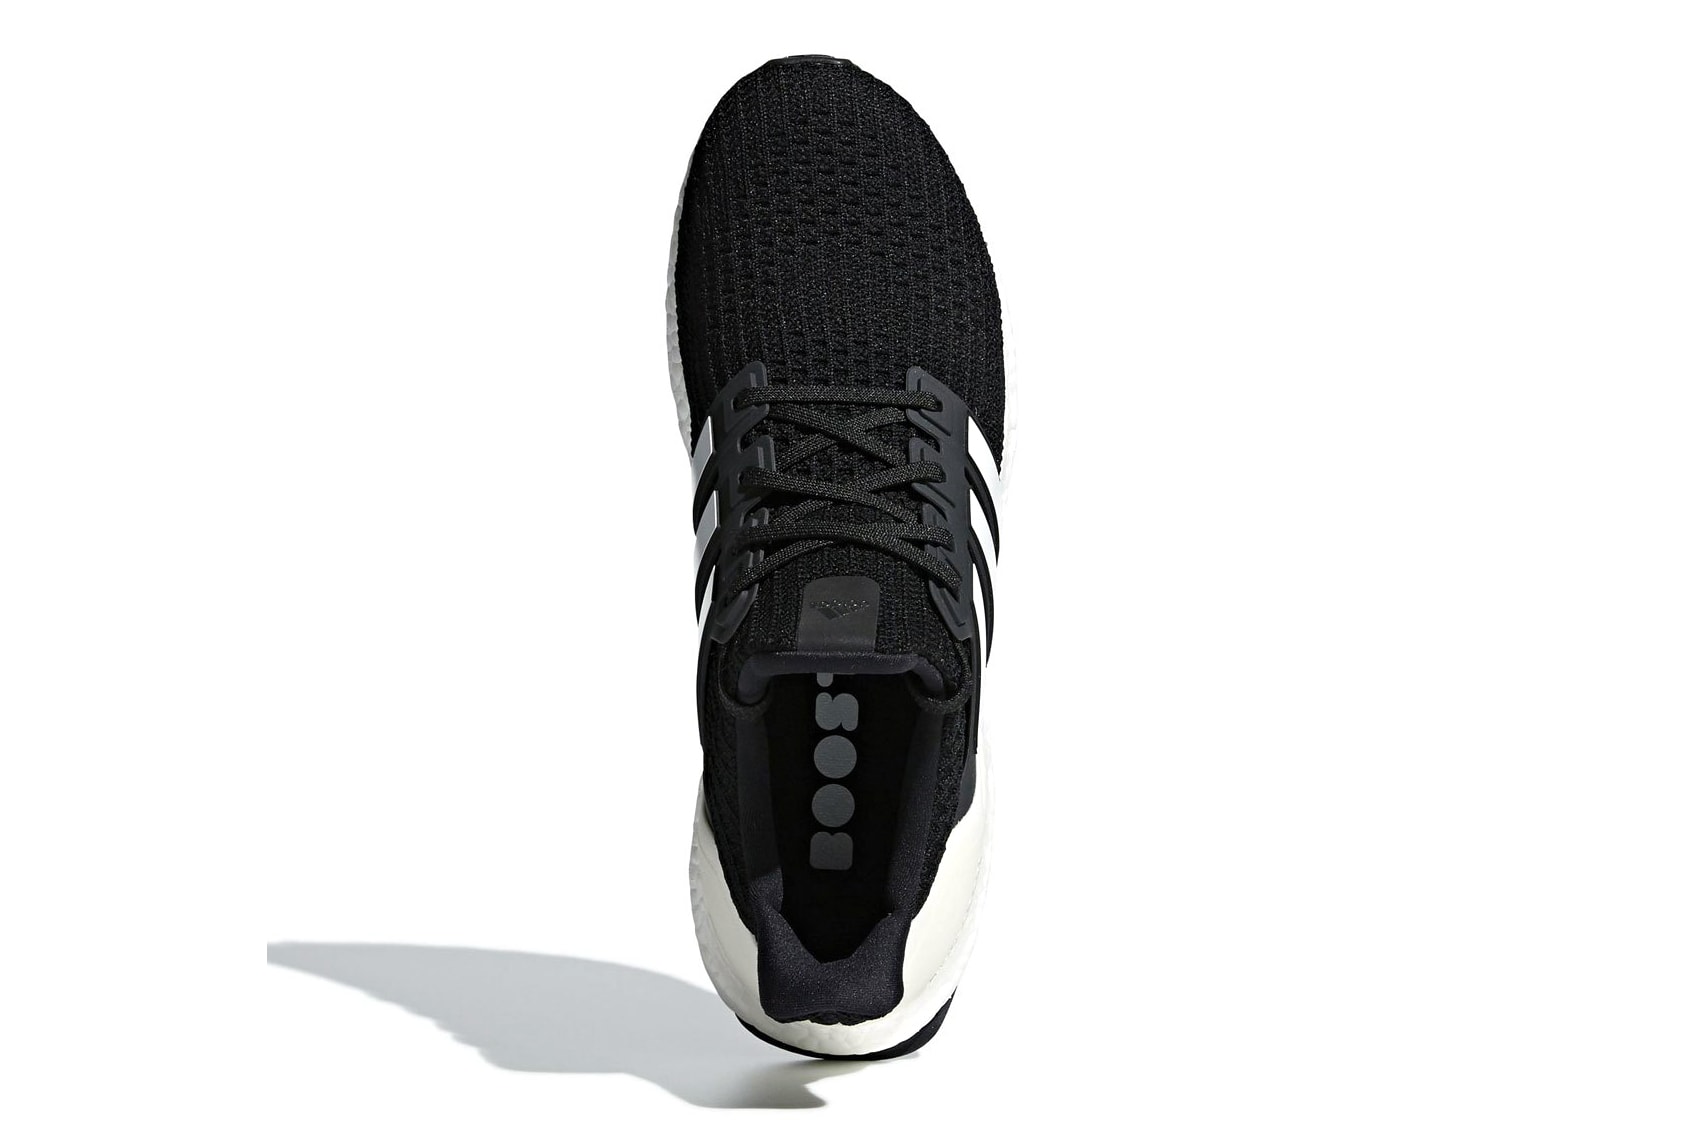 adidas UltraBOOST 4.0 Show Your Stripes core black tech ink release info sneakers footwear